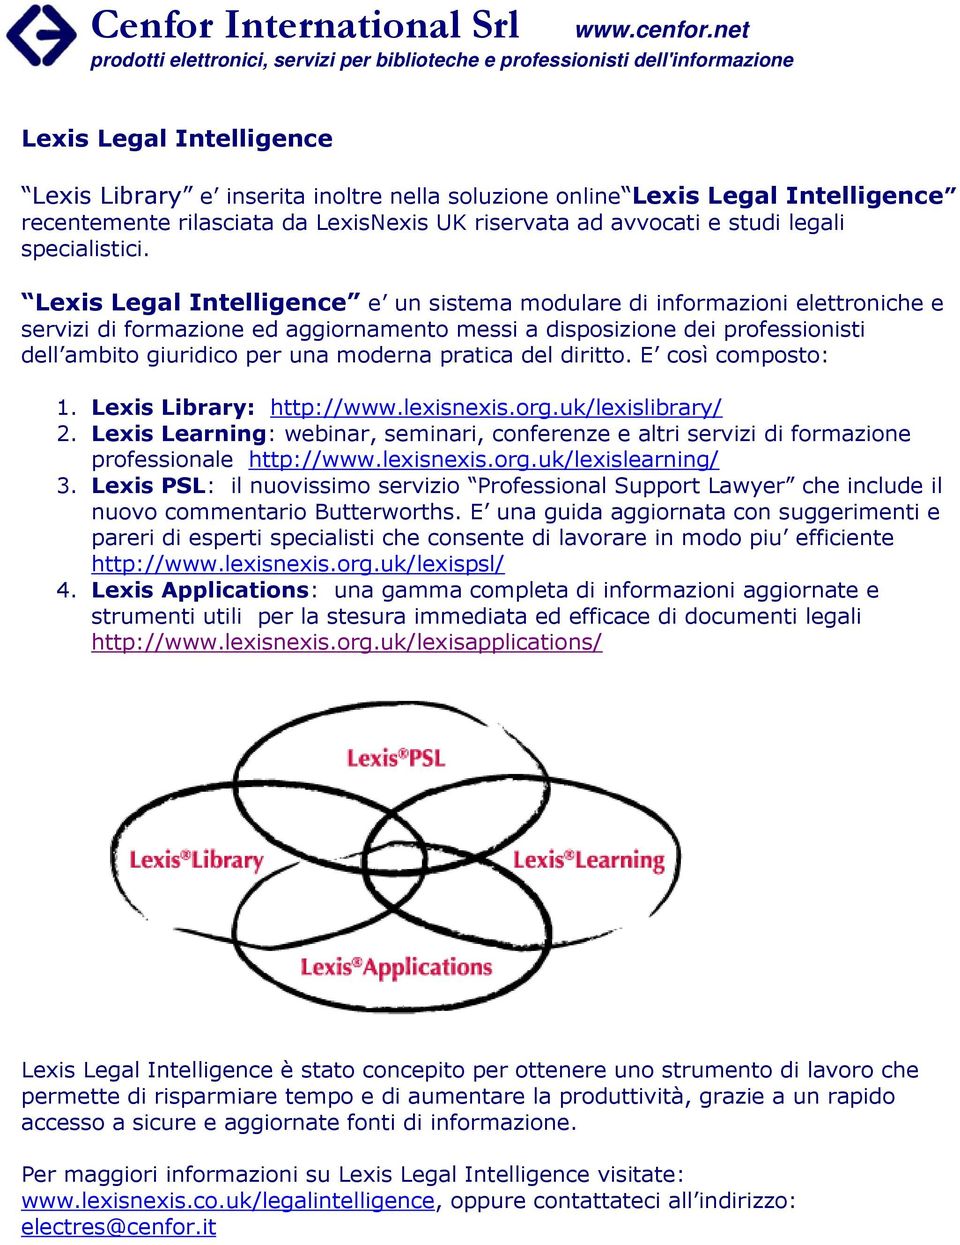 Lexis Legal Intelligence e un sistema modulare di informazioni elettroniche e servizi di formazione ed aggiornamento messi a disposizione dei professionisti dell ambito giuridico per una moderna